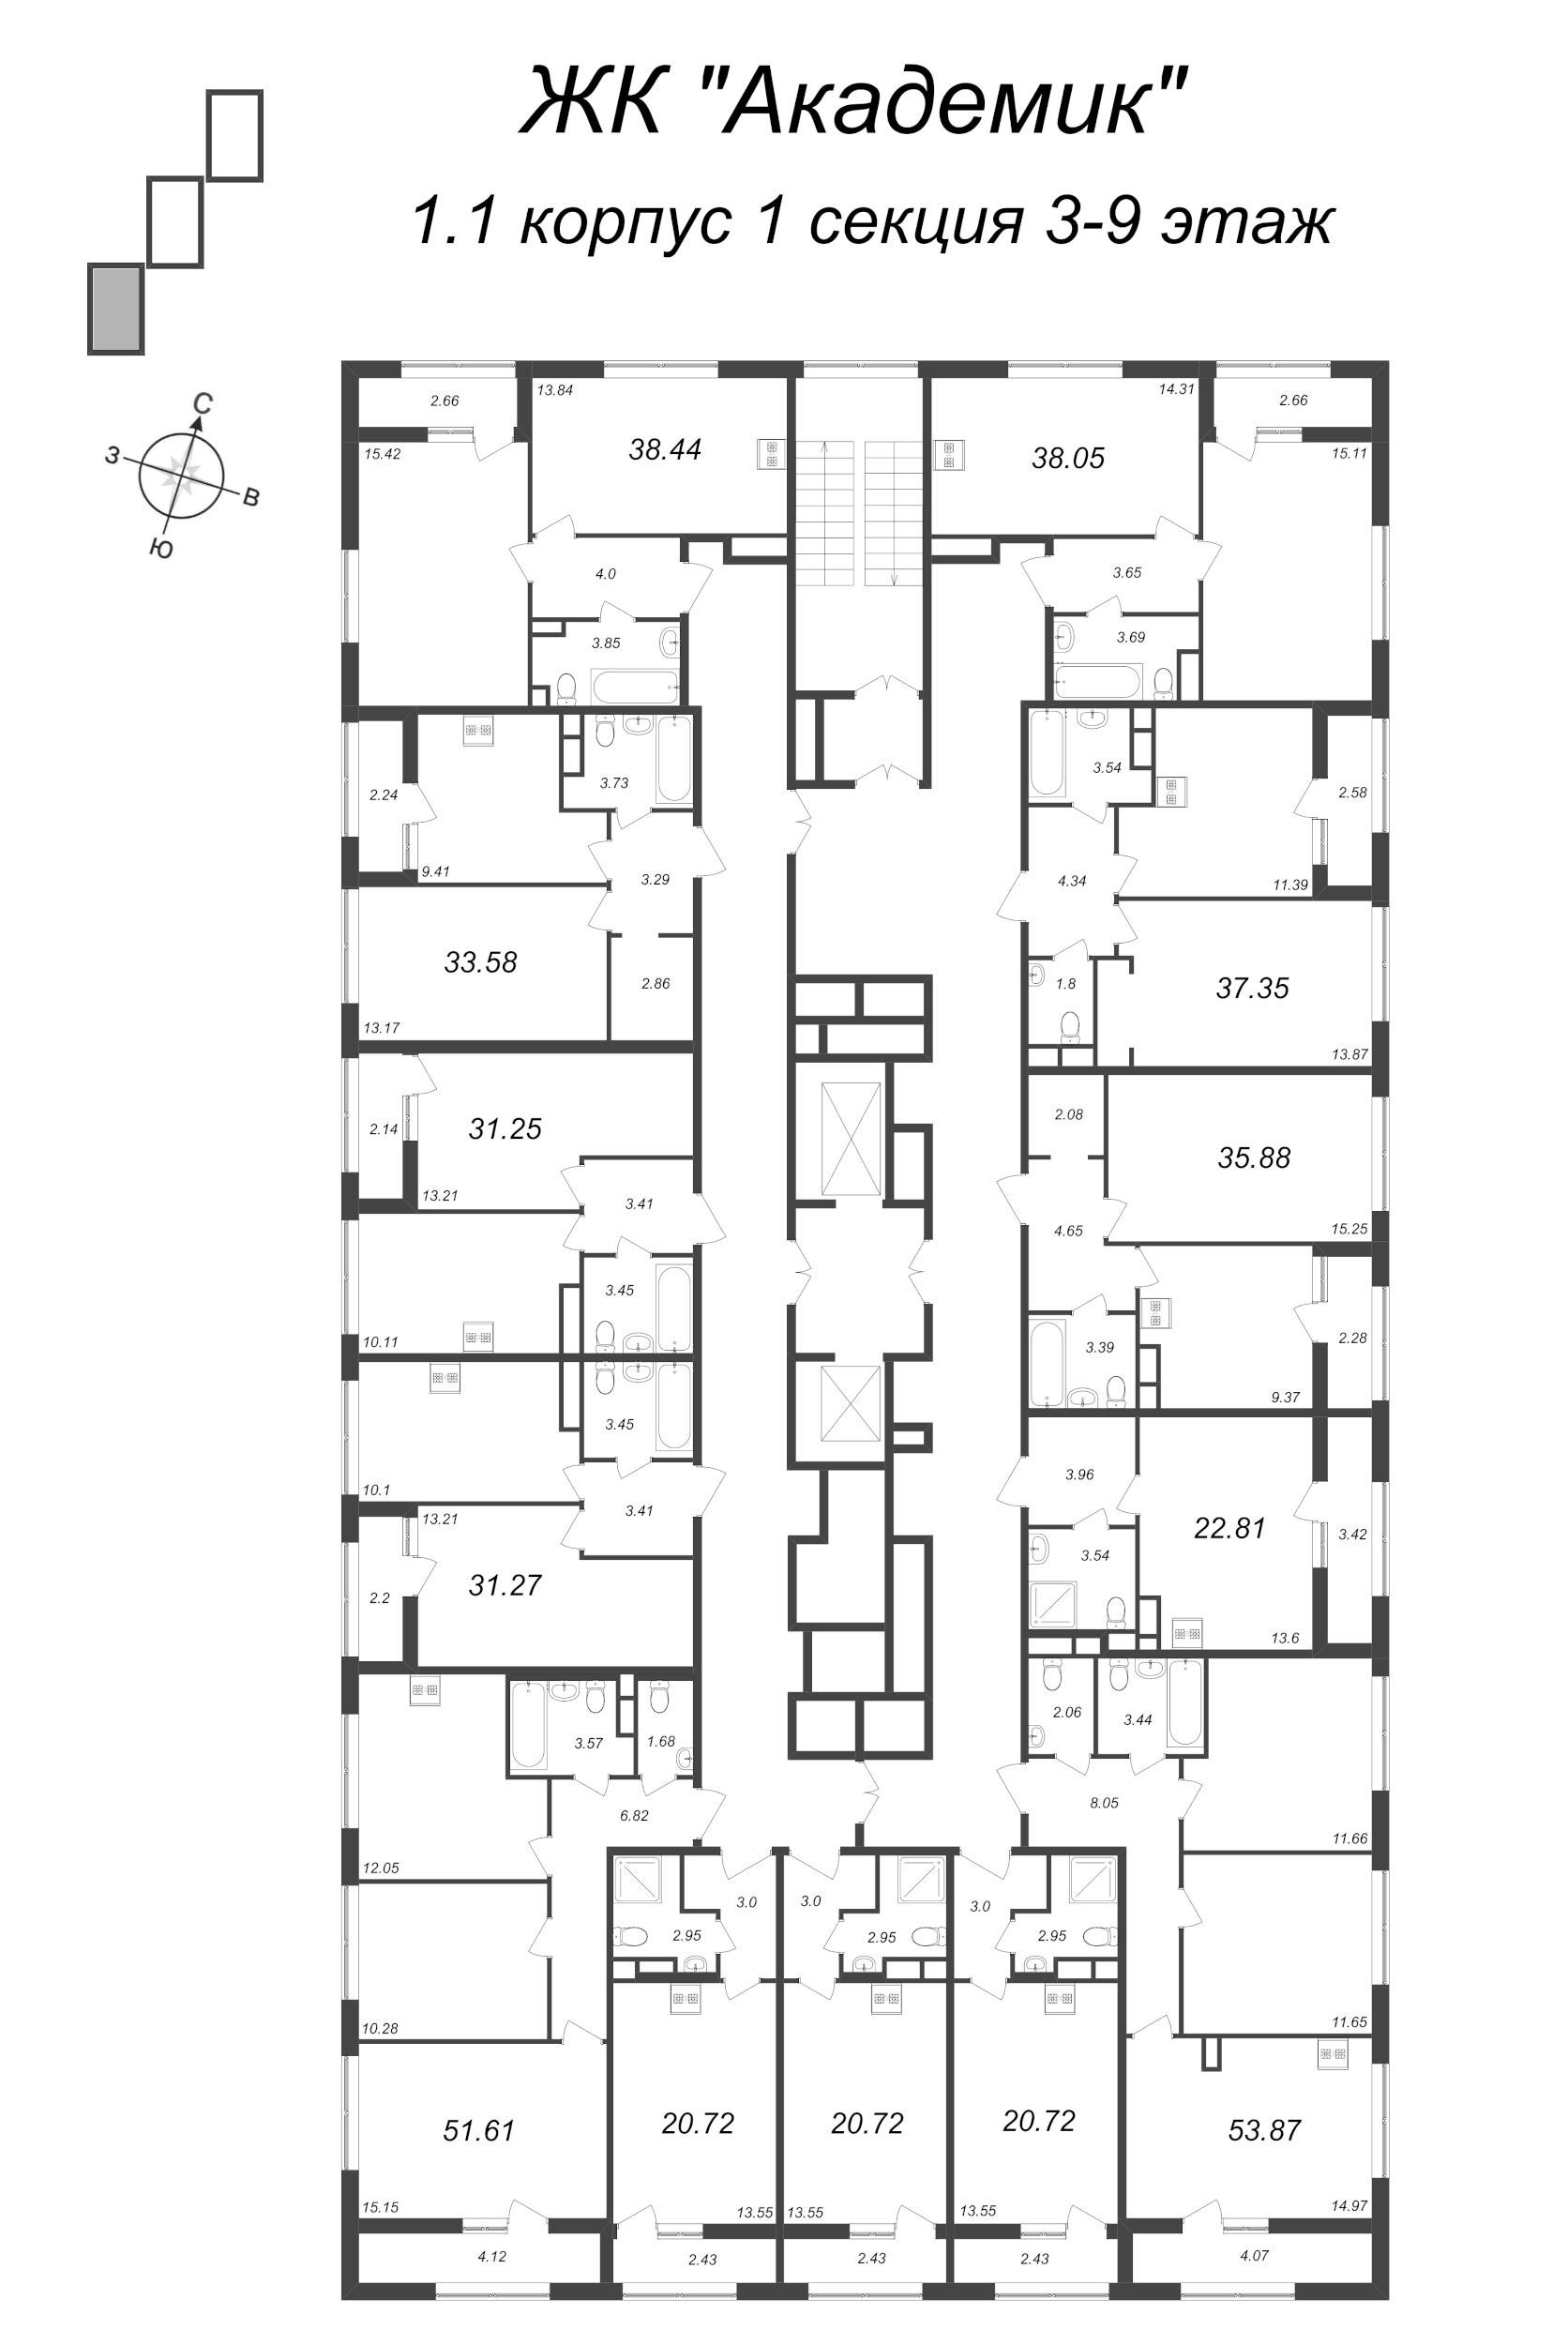 3-комнатная (Евро) квартира, 53.87 м² в ЖК "Академик" - планировка этажа